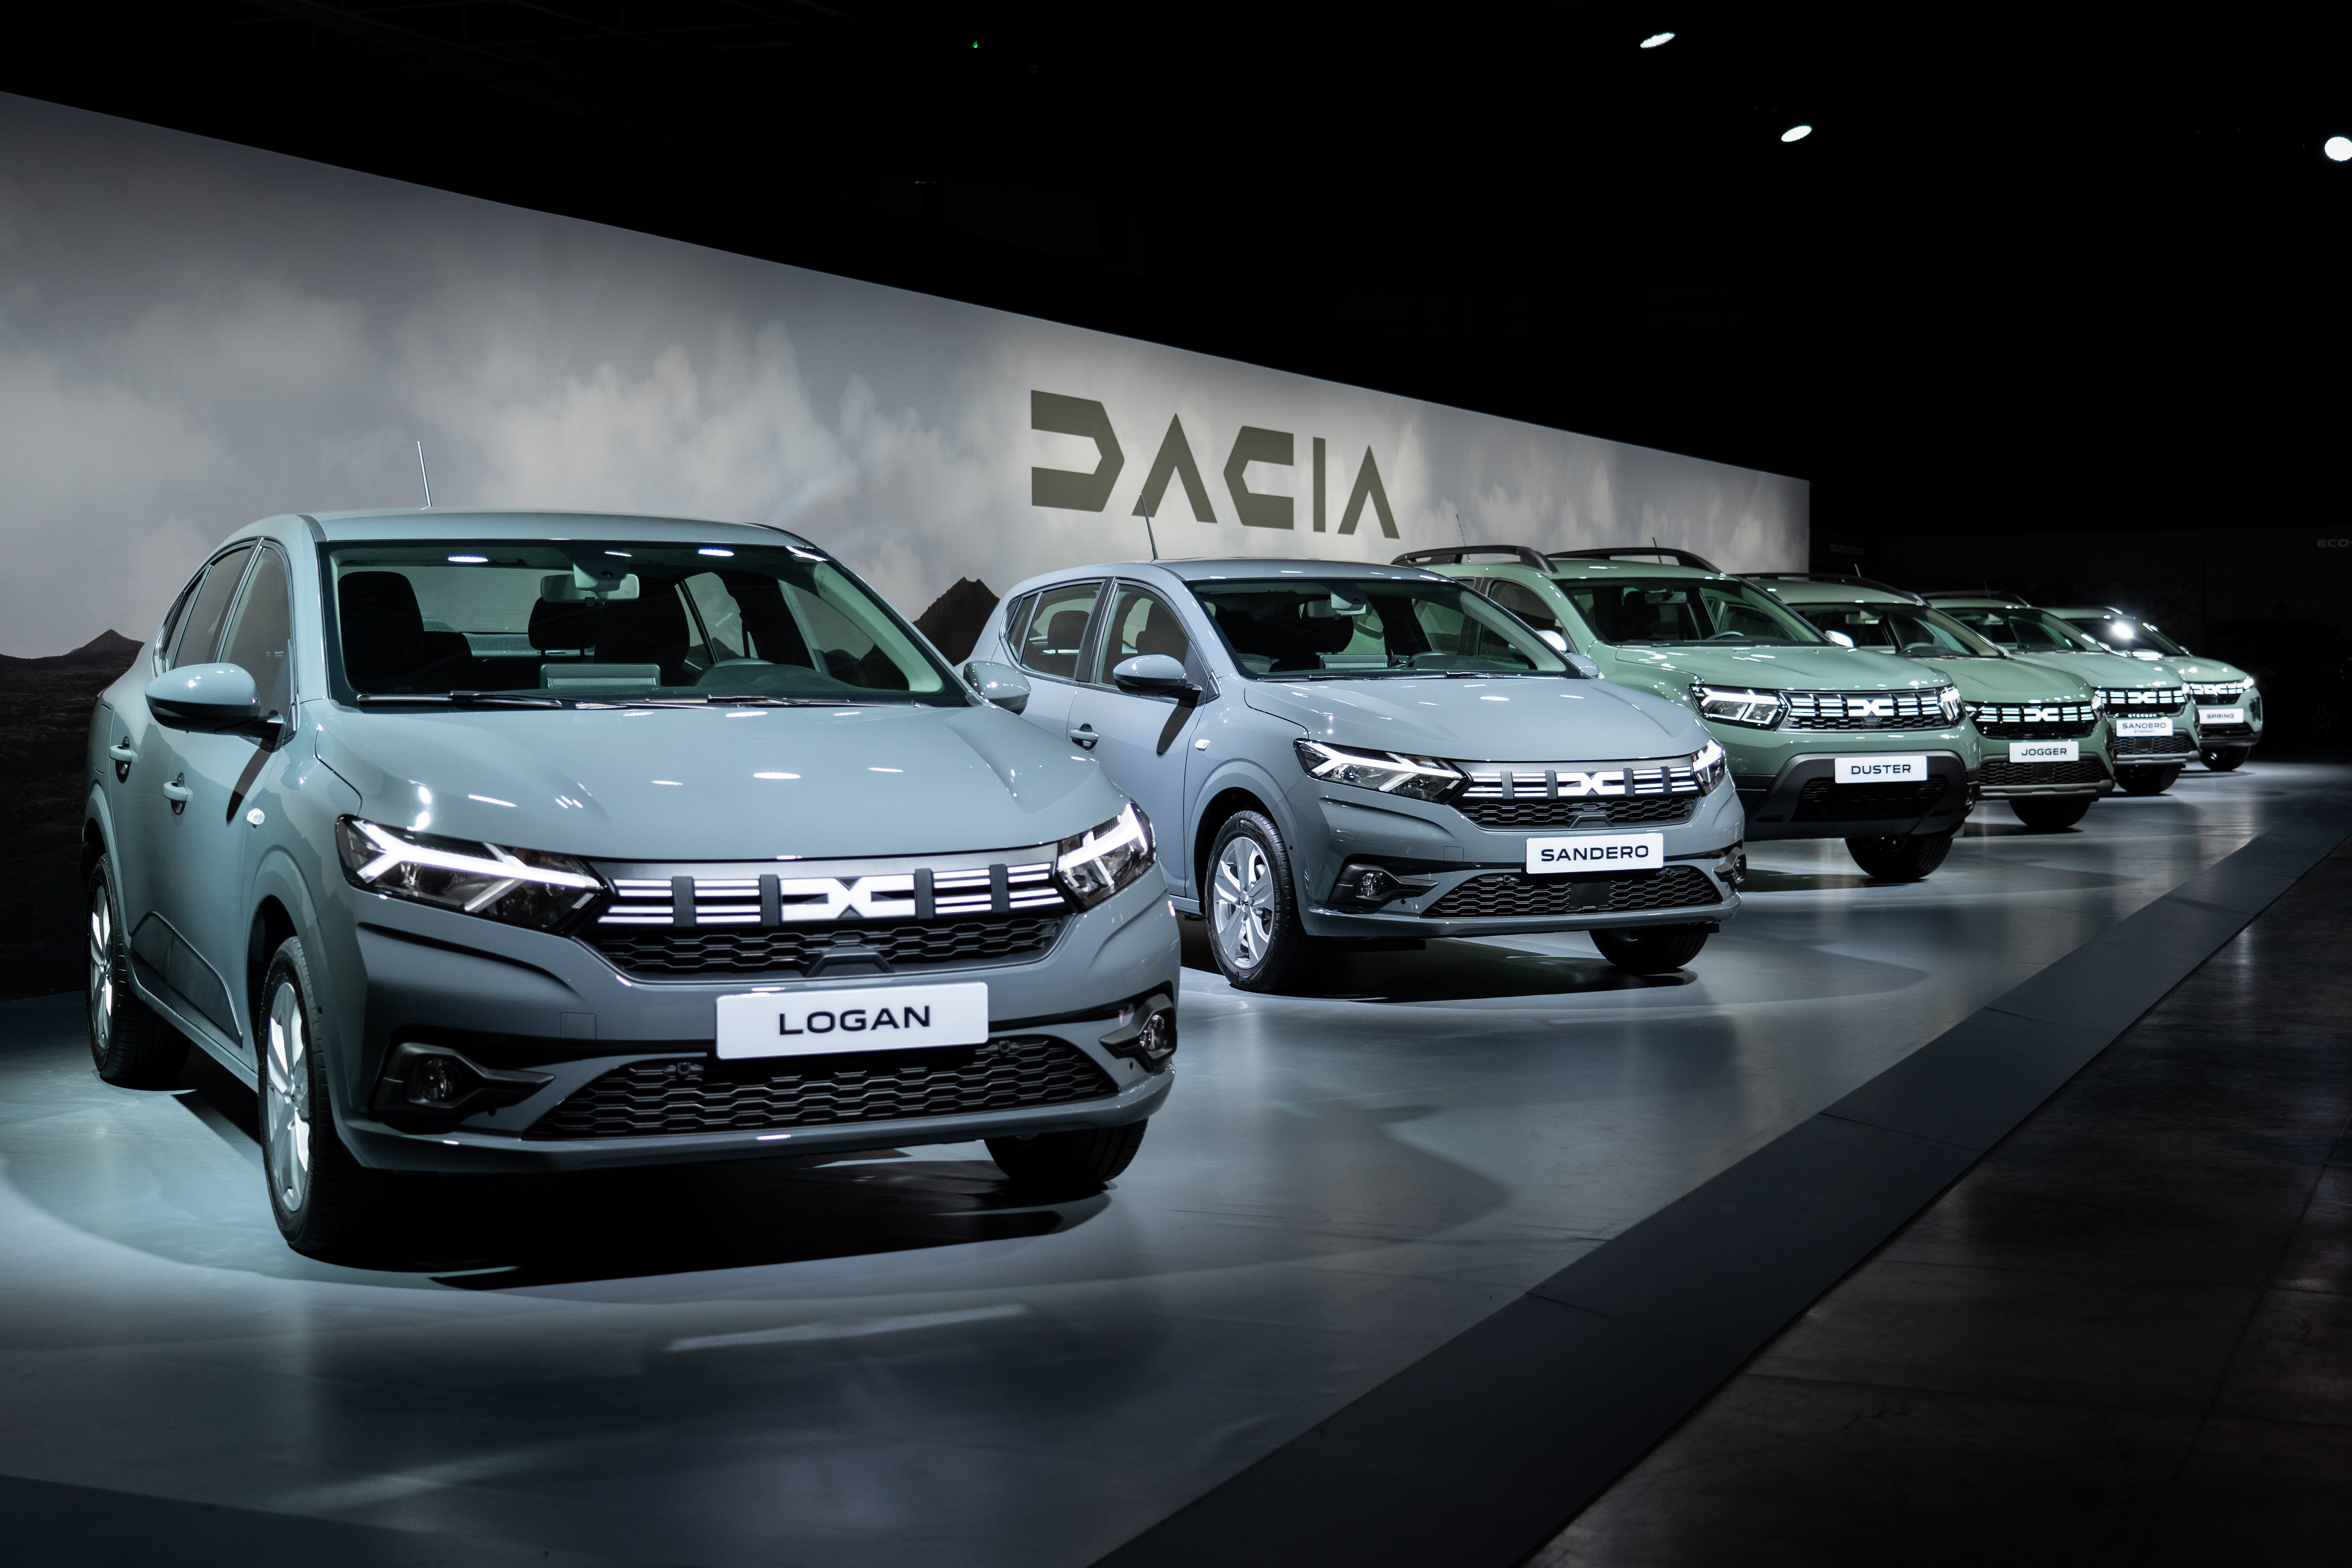 Tomorrow, Dacia will take one step further - Site media global de Dacia